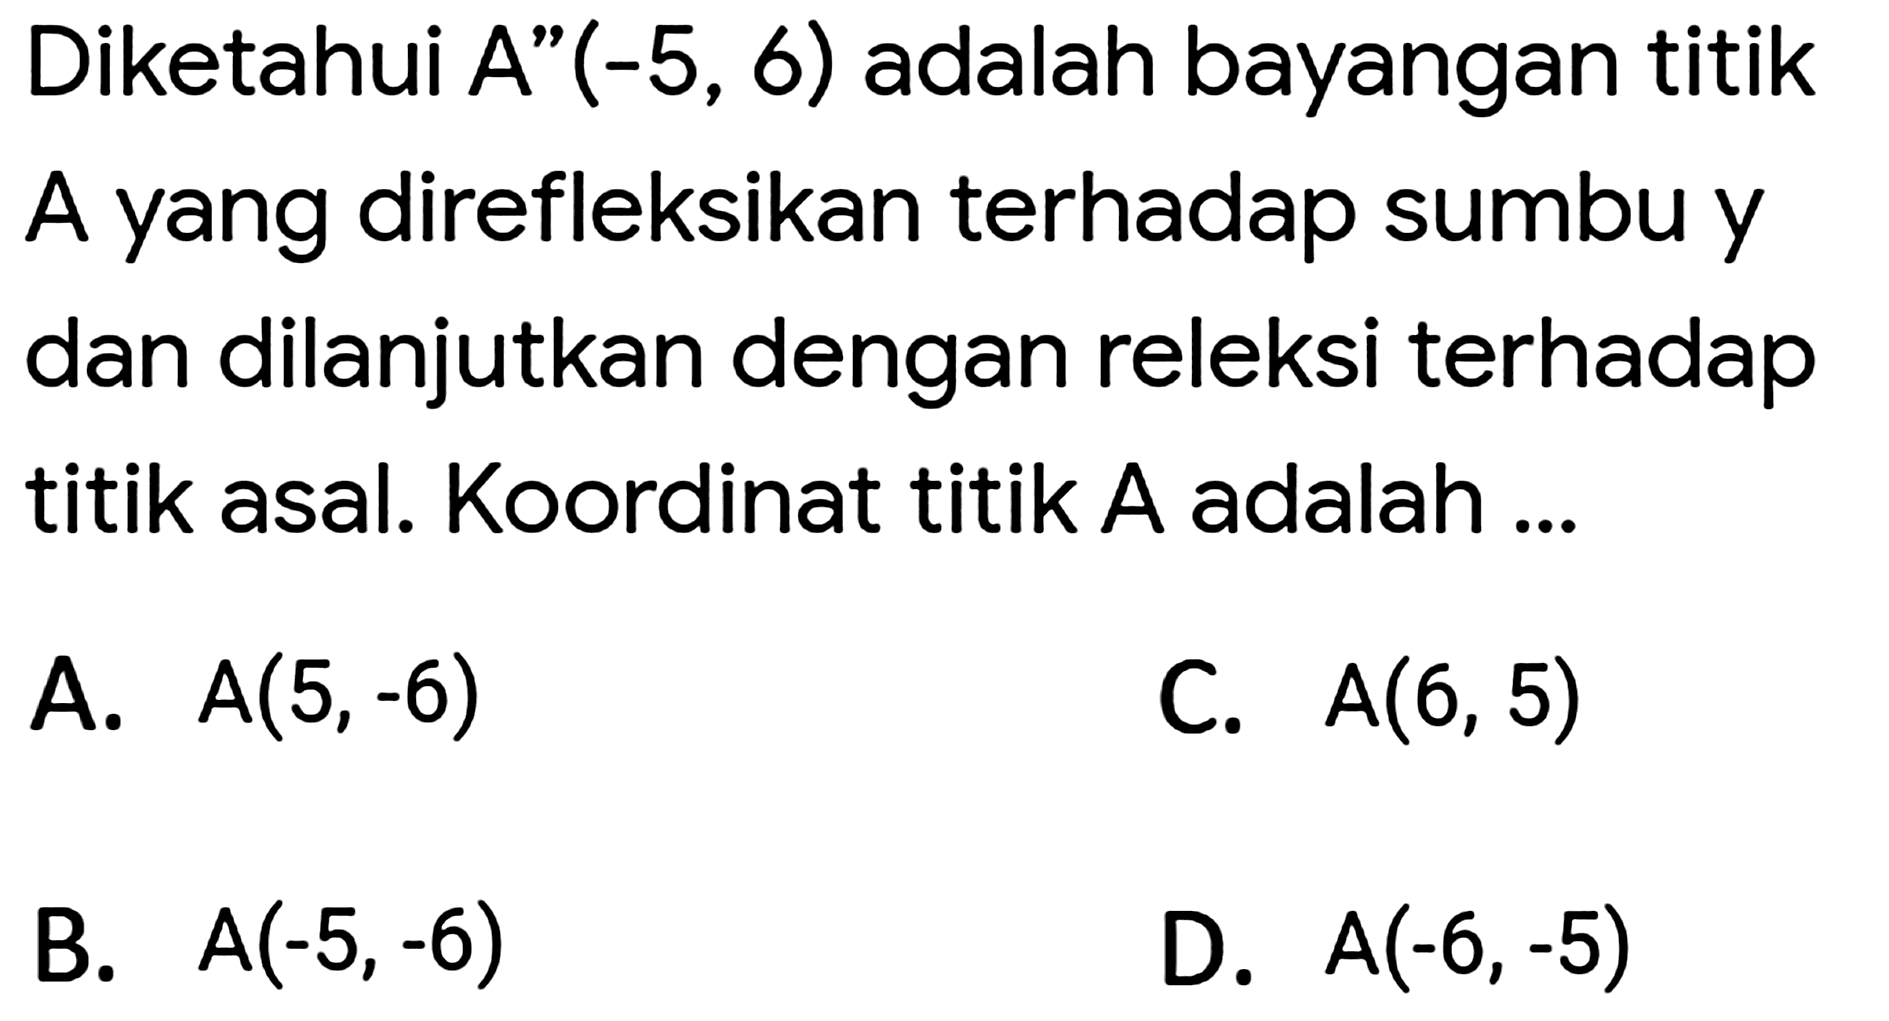 Diketahui A"  (-5,6)  adalah bayangan titik A yang direfleksikan terhadap sumbu y dan dilanjutkan dengan releksi terhadap titik asal. Koordinat titik A adalah ...
A.  A(5,-6) 
C.  A(6,5) 
B.  A(-5,-6) 
D.  A(-6,-5) 